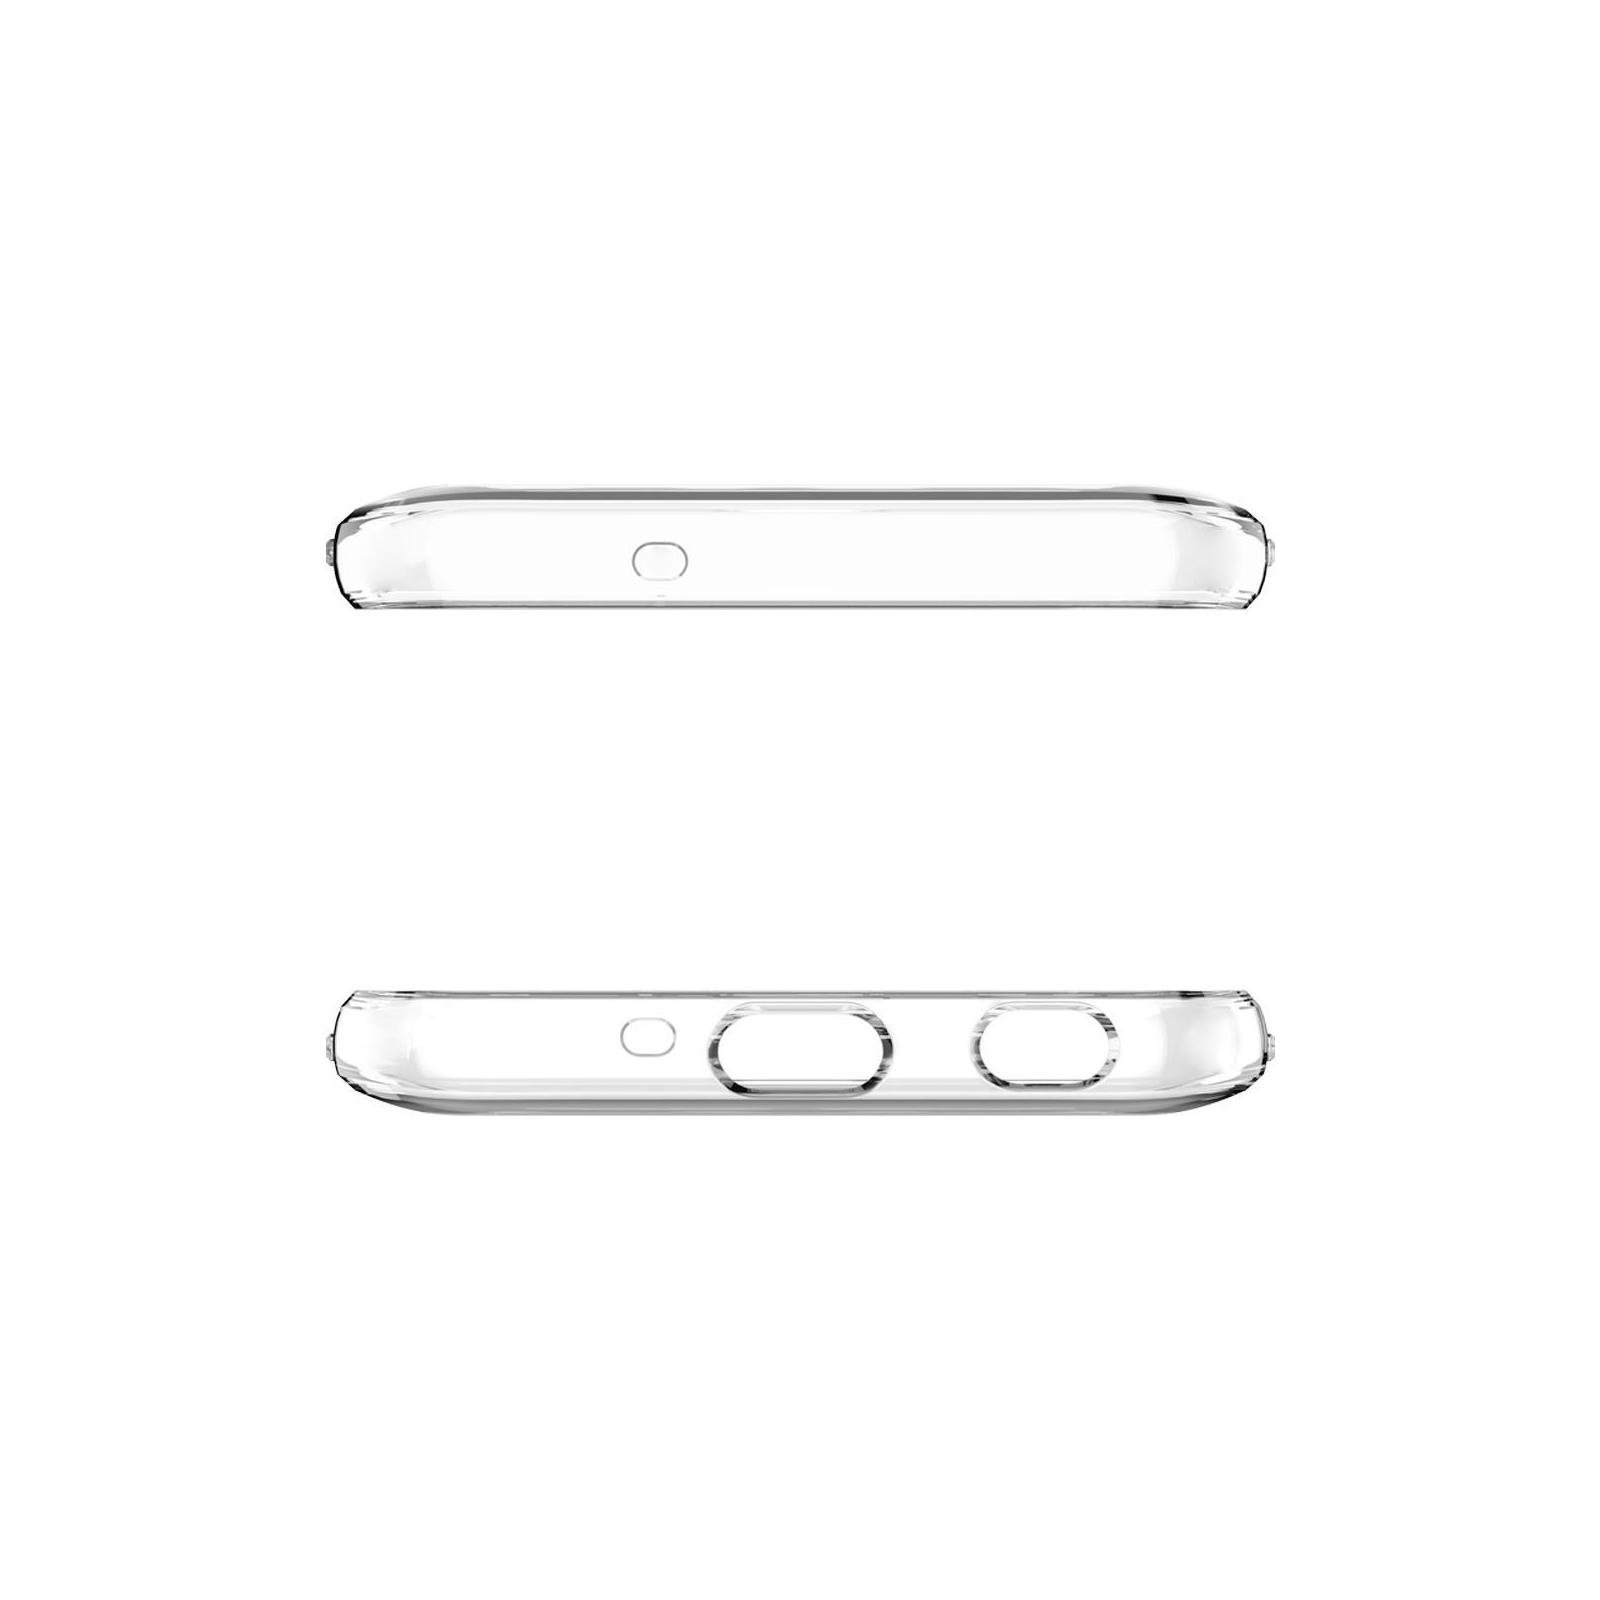 Чехол для мобильного телефона Laudtec для SAMSUNG Galaxy J7 2018 Clear tpu (Transperent) (LC-GJ737T) изображение 5